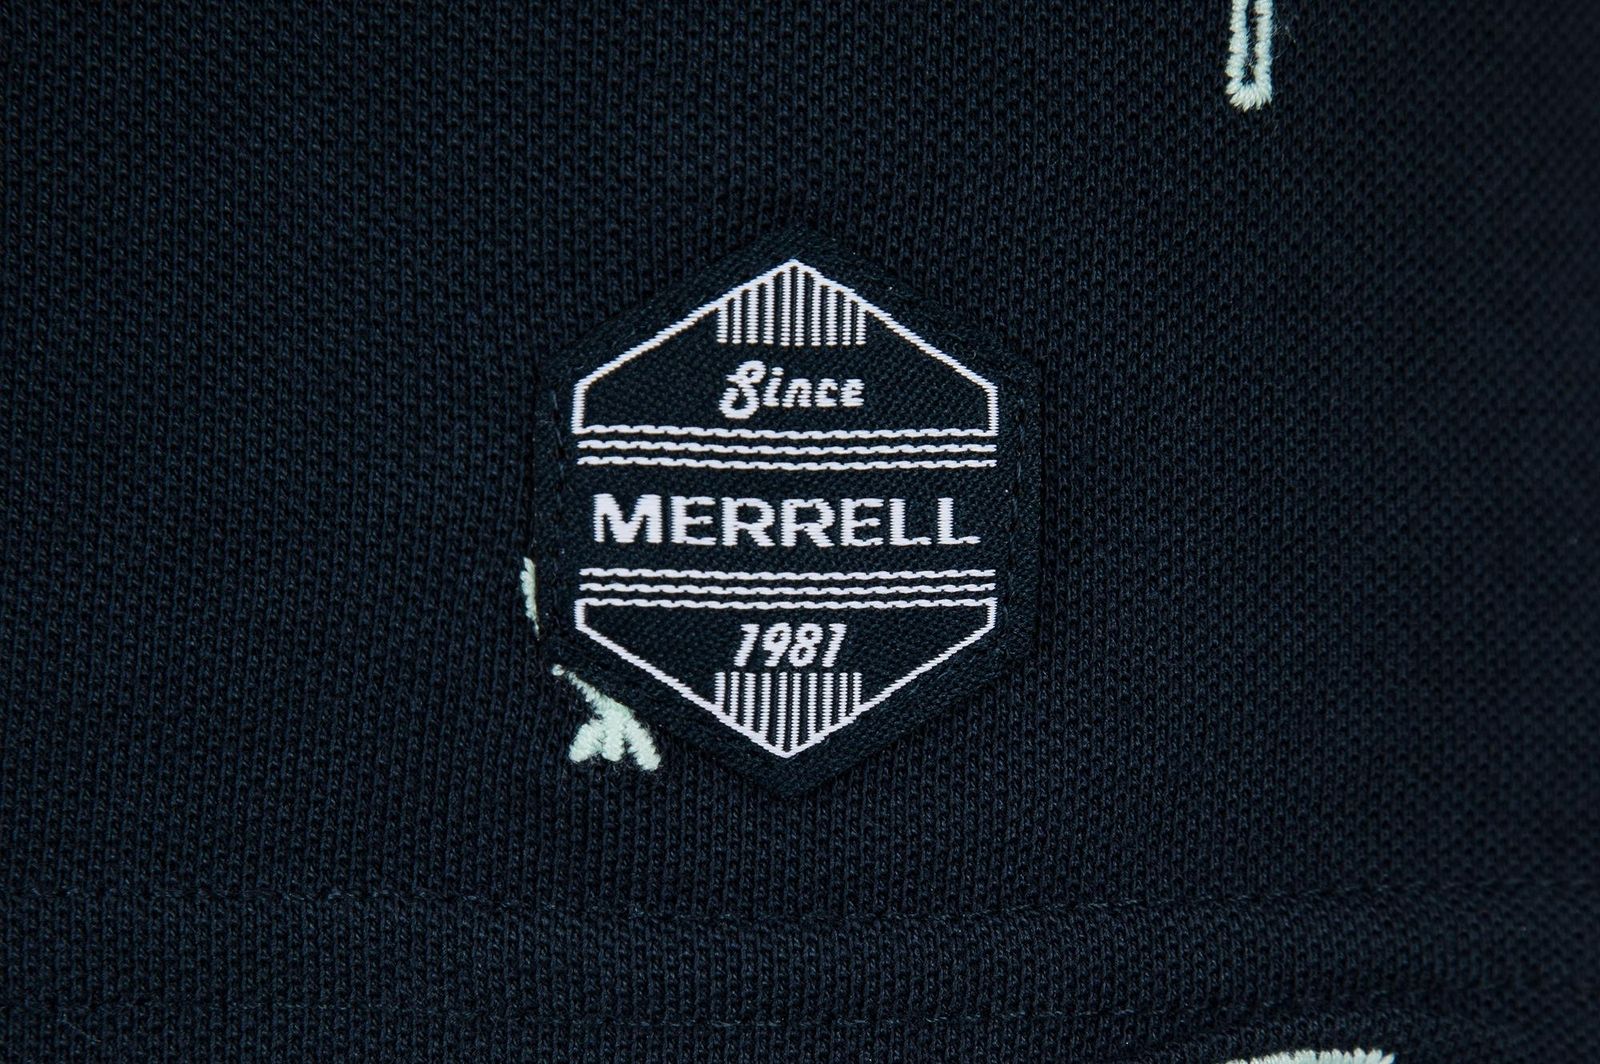   Merrell Men's Polo, : . S19AMRPOM01-M1.  50